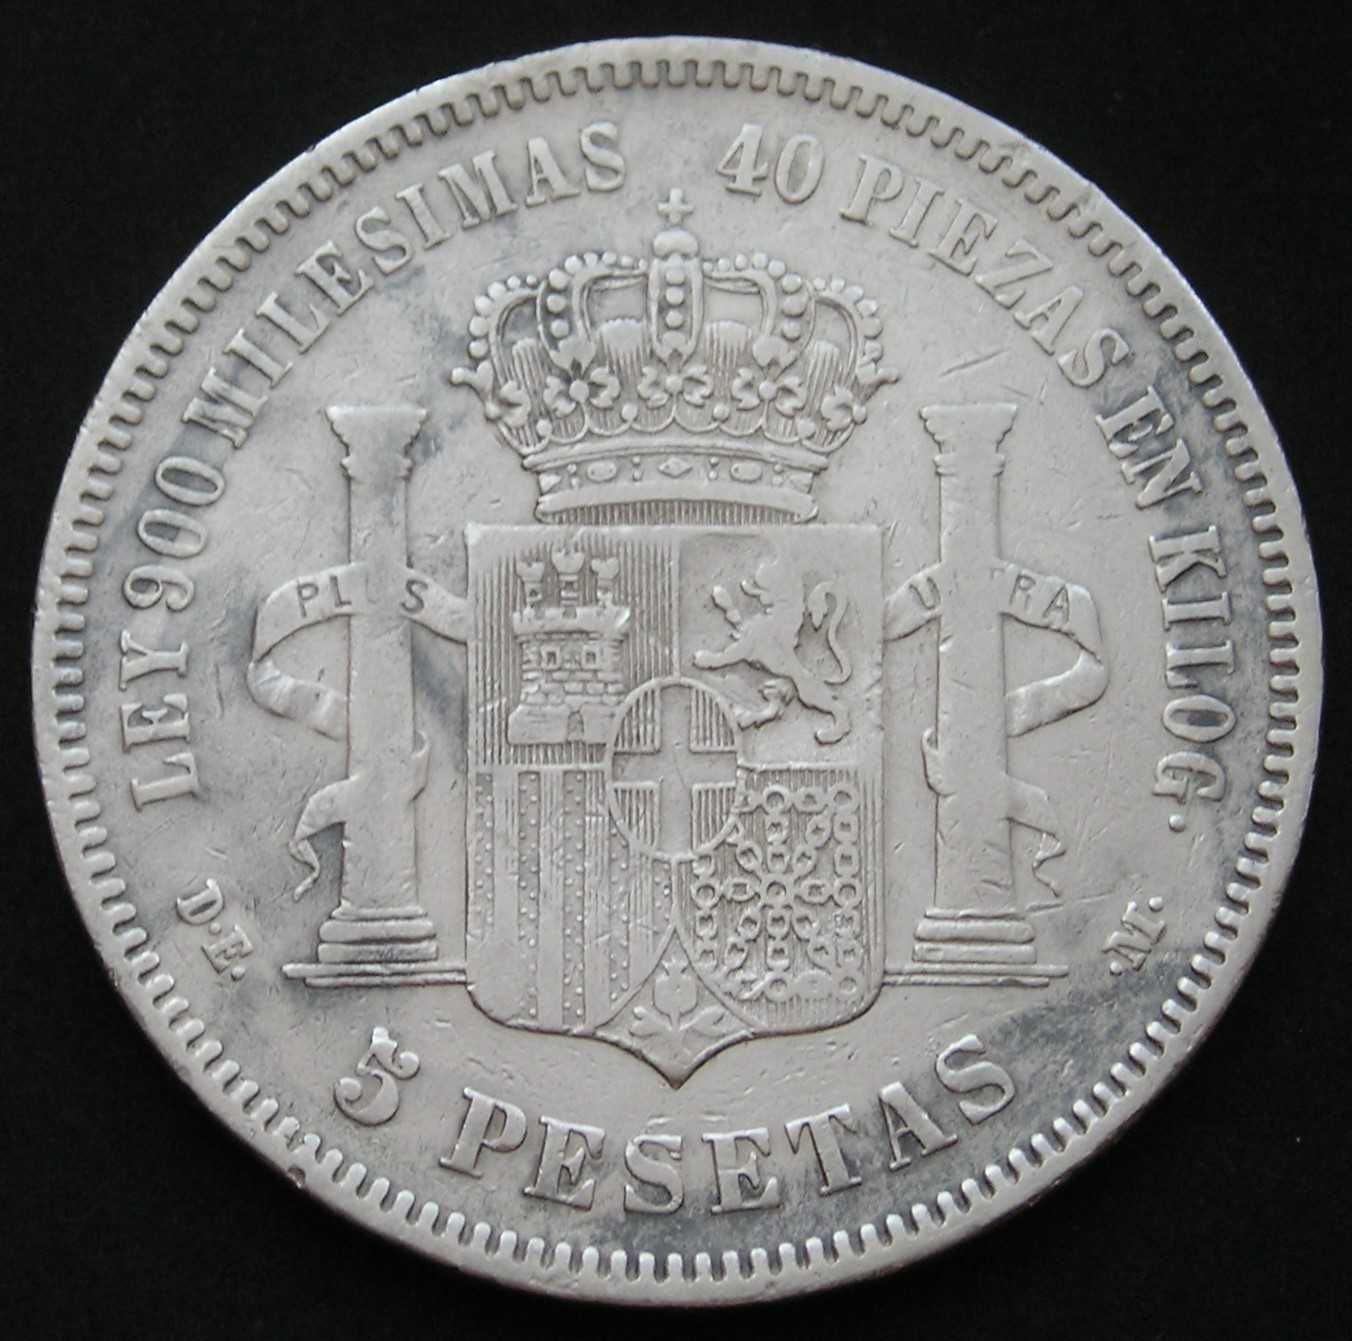 Hiszpania 5 peset 1871 - król Amadeo I - srebro